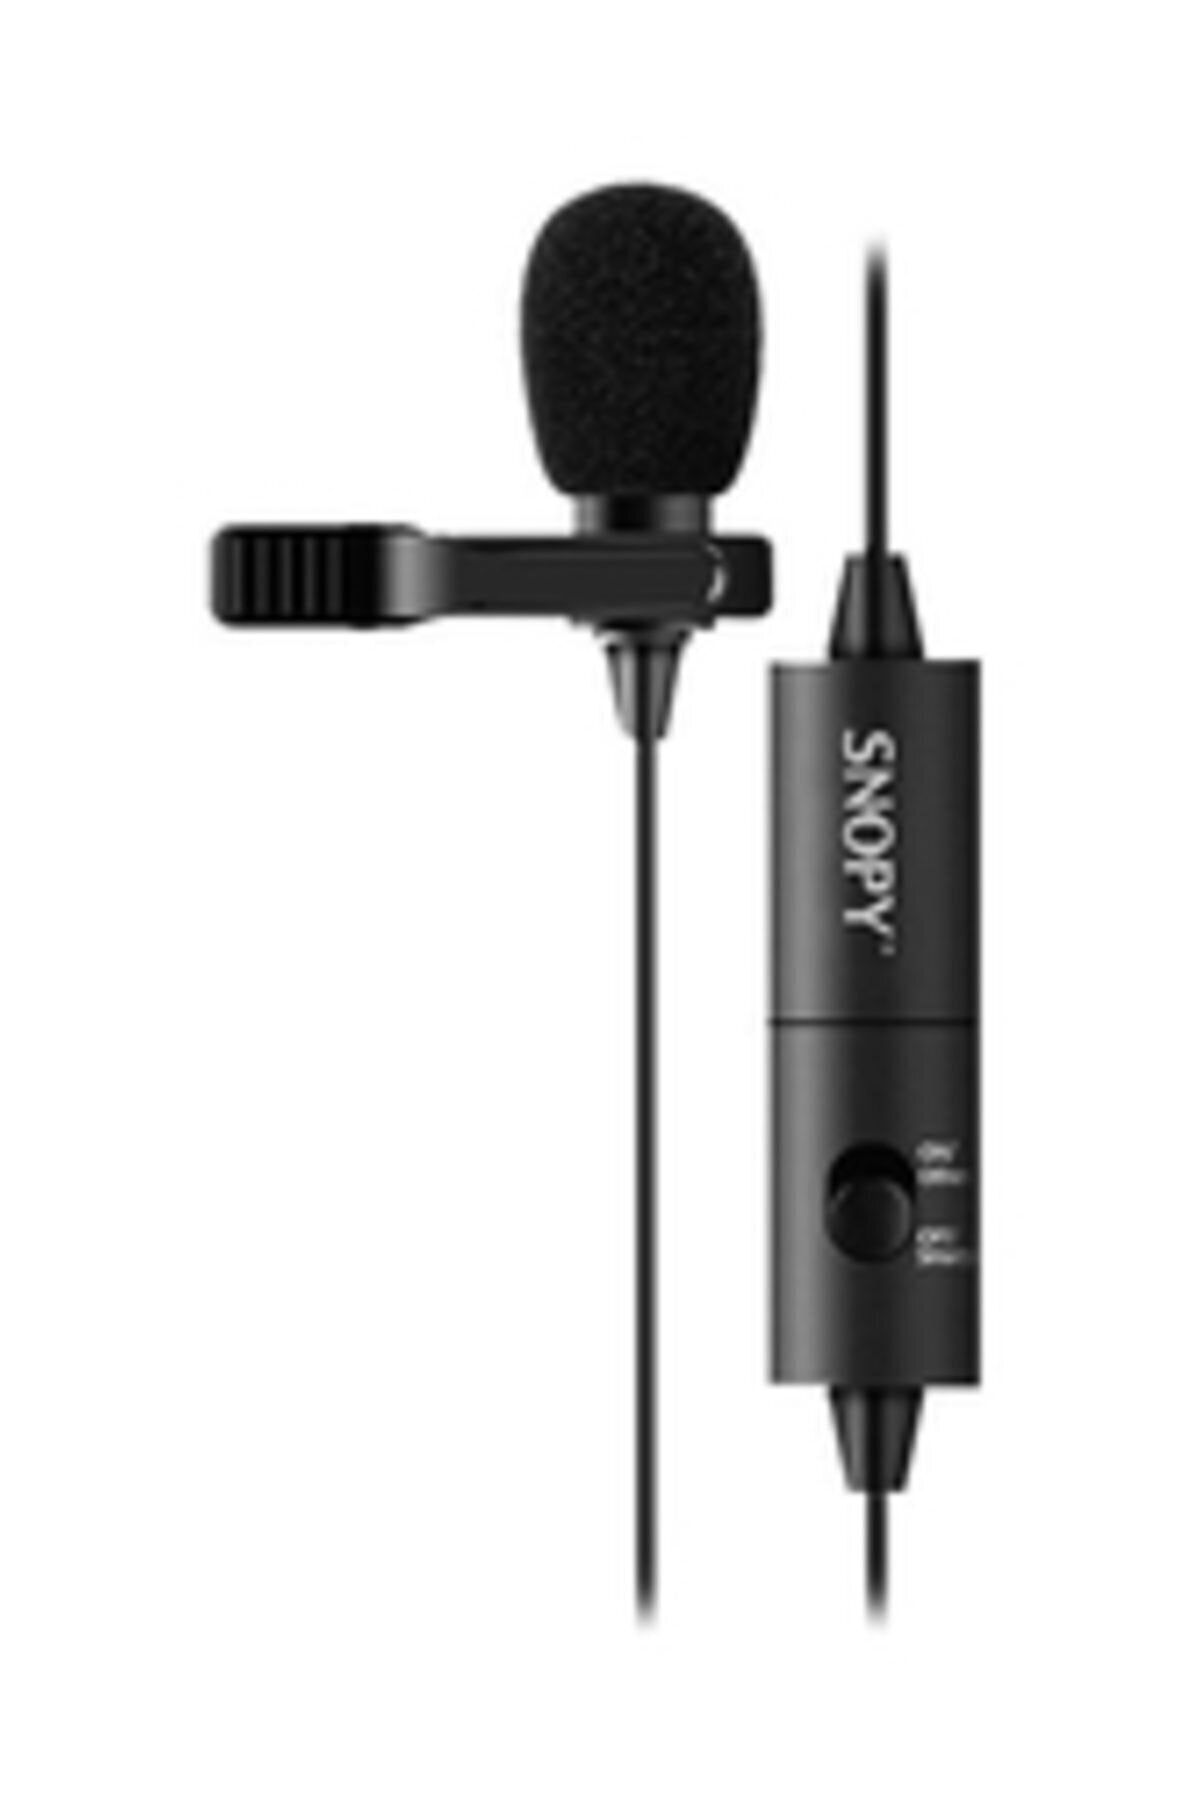 Snopy Sn-100m Siyah Akıllı Telefon Ve Youtuber Yaka Mikrofonu